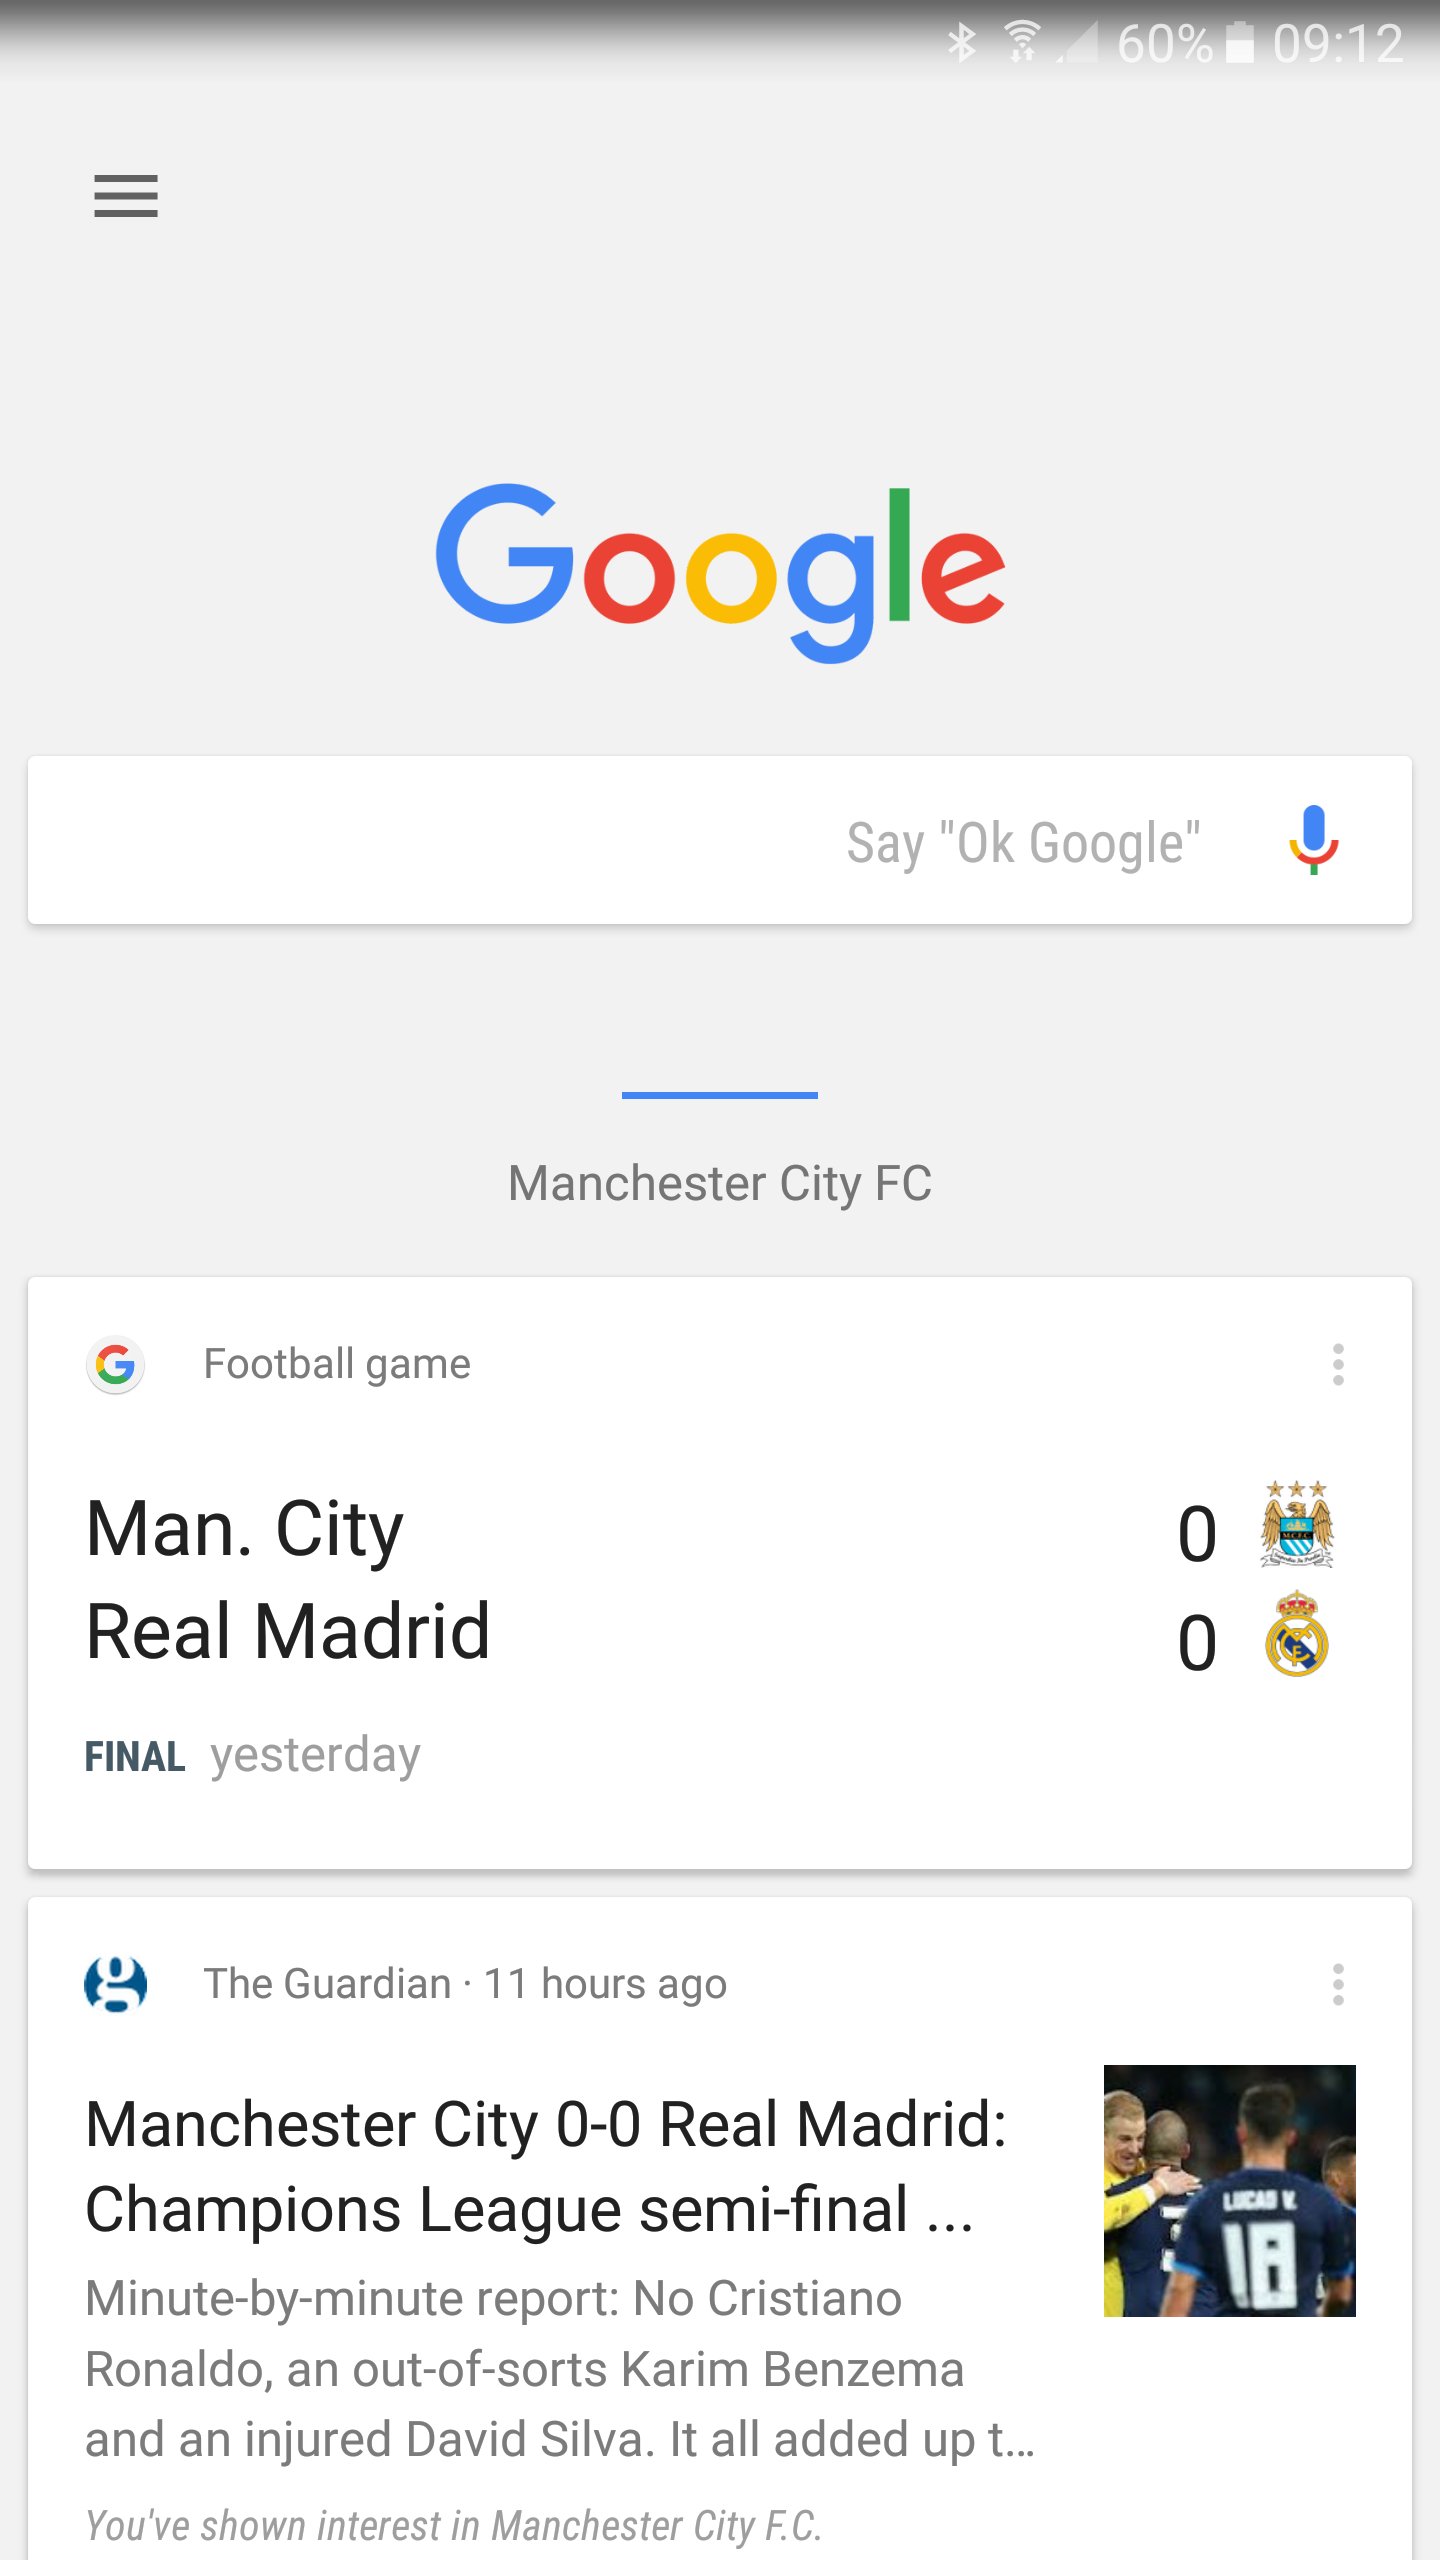 ¿Cómo uso Google ahora?